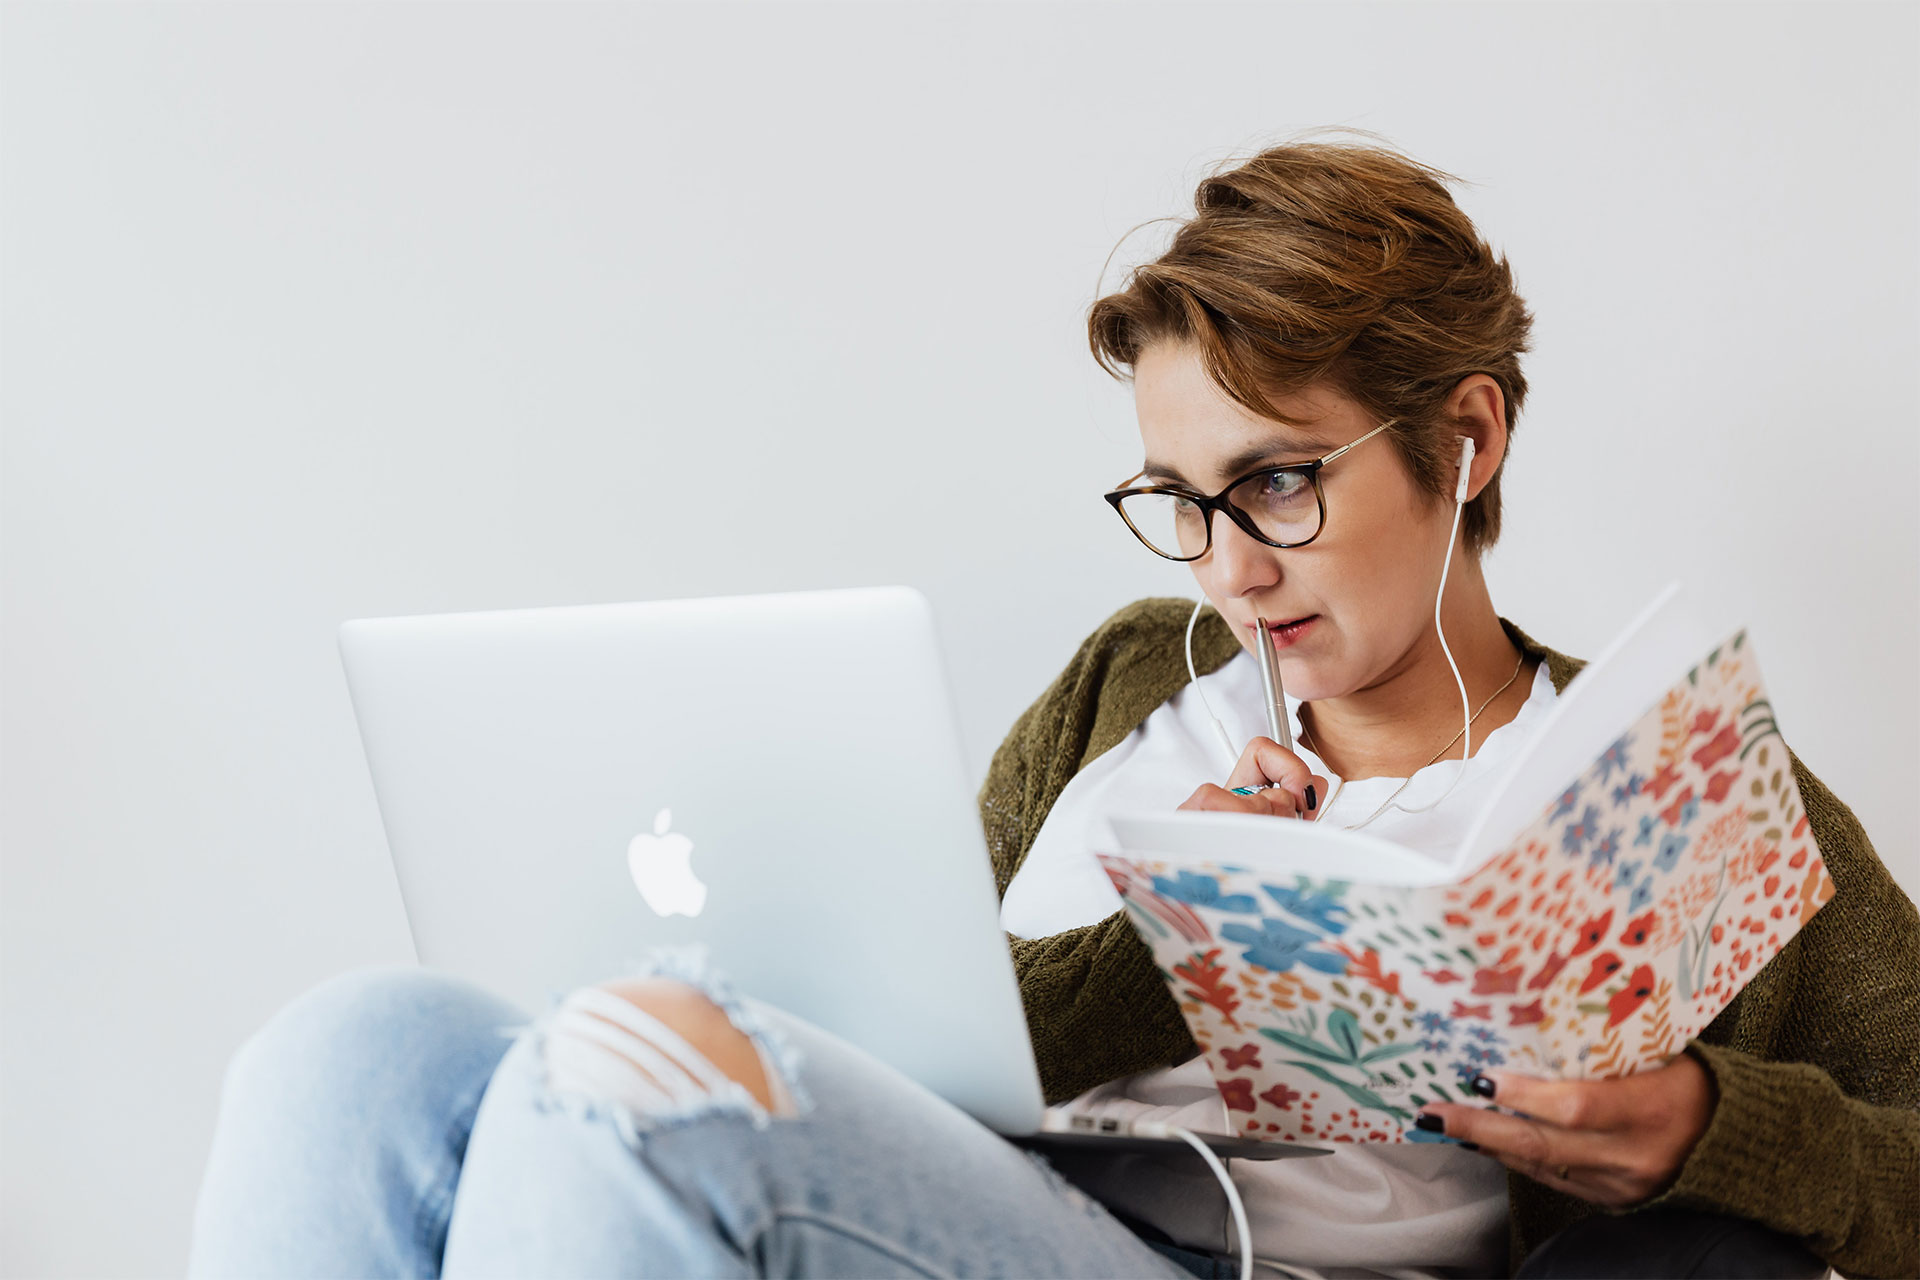 Una persona con auriculares puestos trabajando en una MacBook y con un cuaderno y un bolígrafo en la mano.